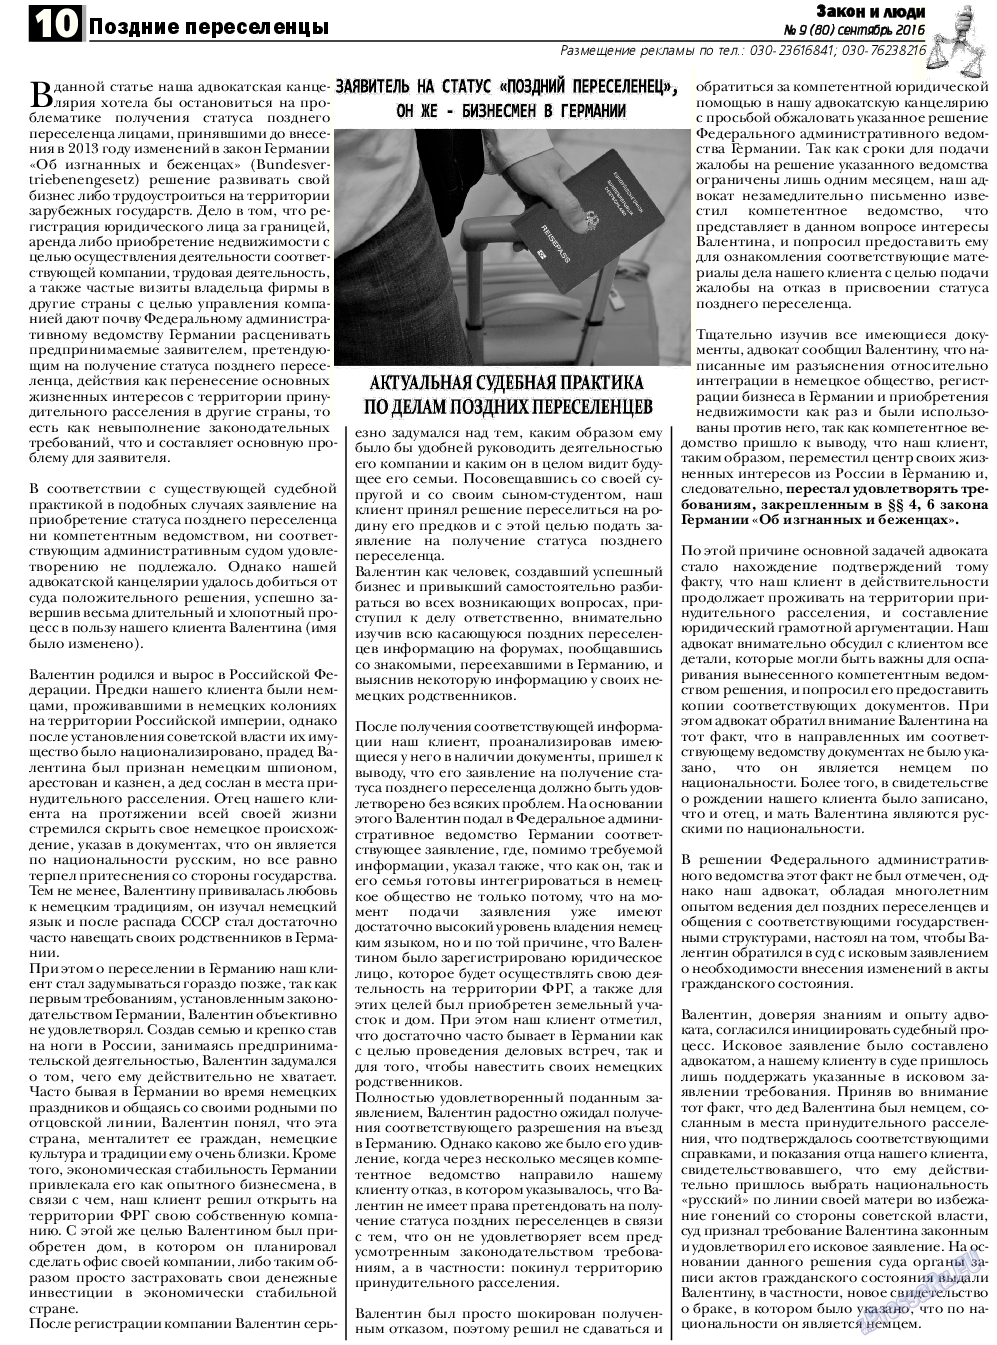 Закон и люди, газета. 2016 №9 стр.10